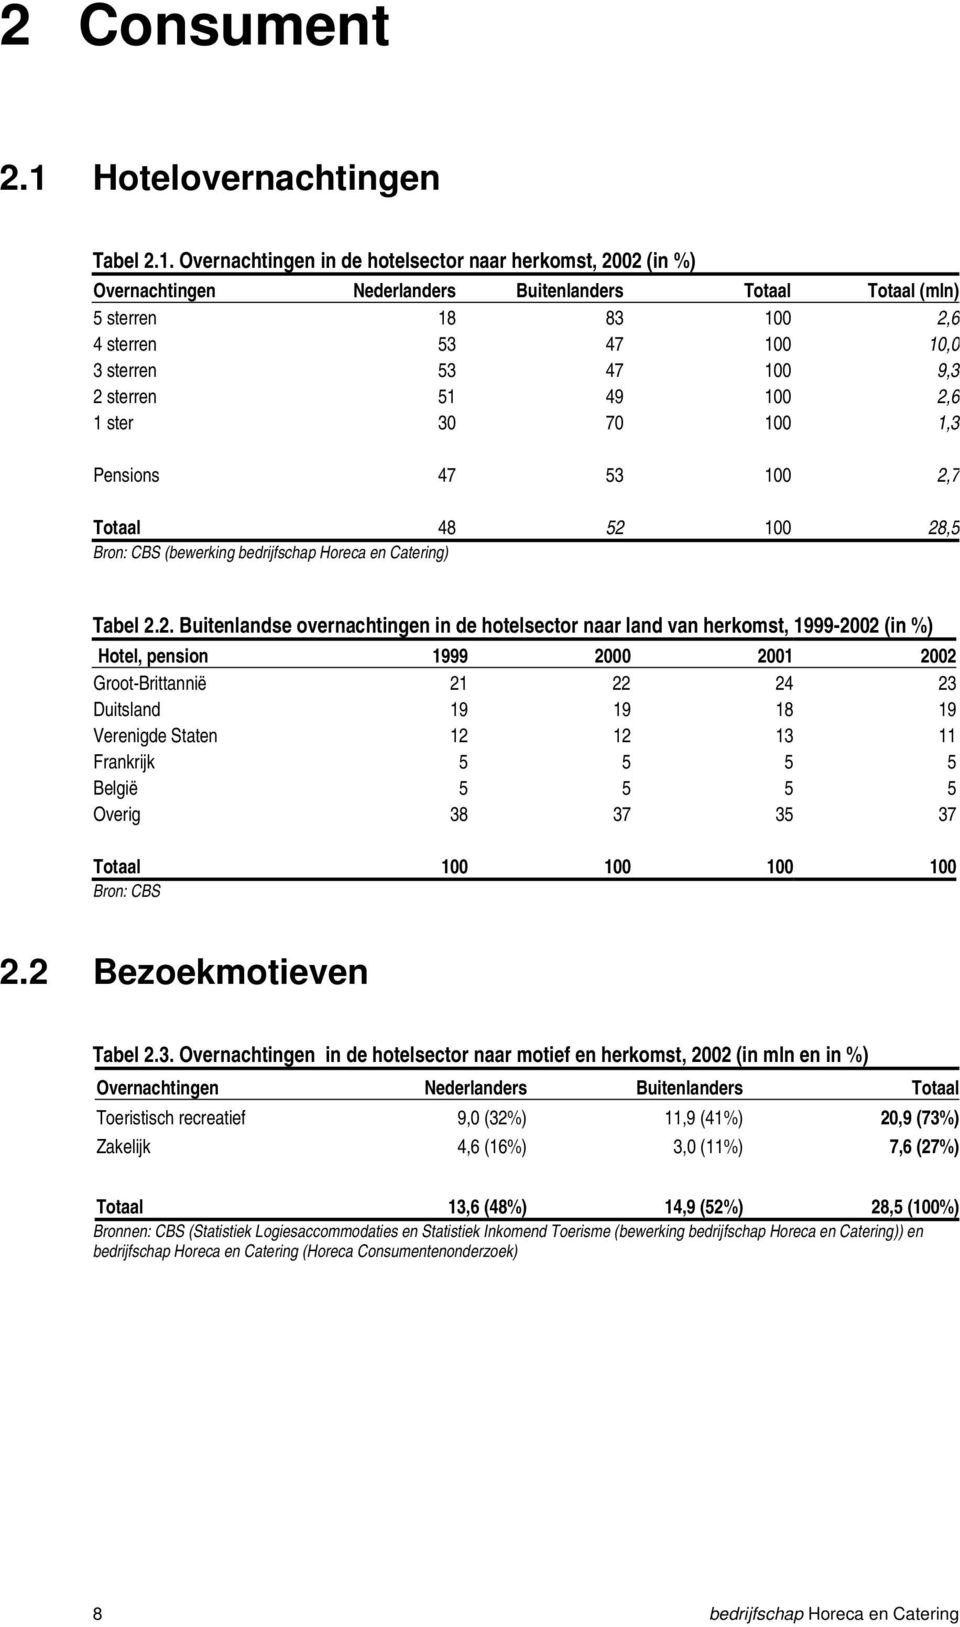 Overnachtingen in de hotelsector naar herkomst, 2002 (in %) Overnachtingen Nederlanders Buitenlanders Totaal Totaal (mln) 5 sterren 18 83 100 2,6 4 sterren 53 47 100 10,0 3 sterren 53 47 100 9,3 2